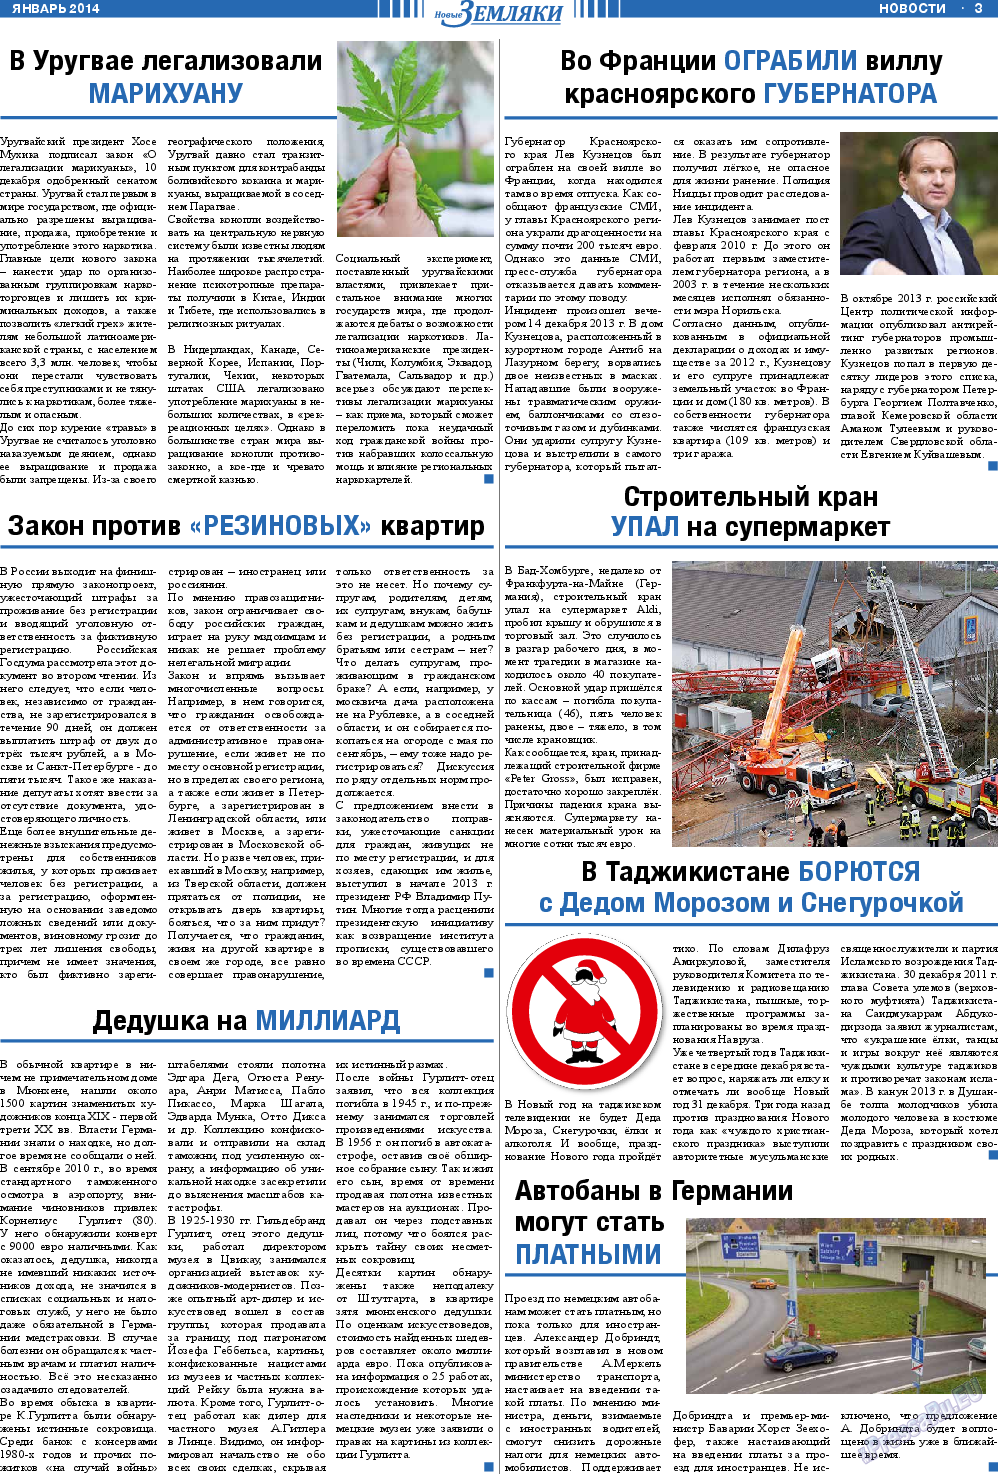 Новые Земляки, газета. 2014 №1 стр.3